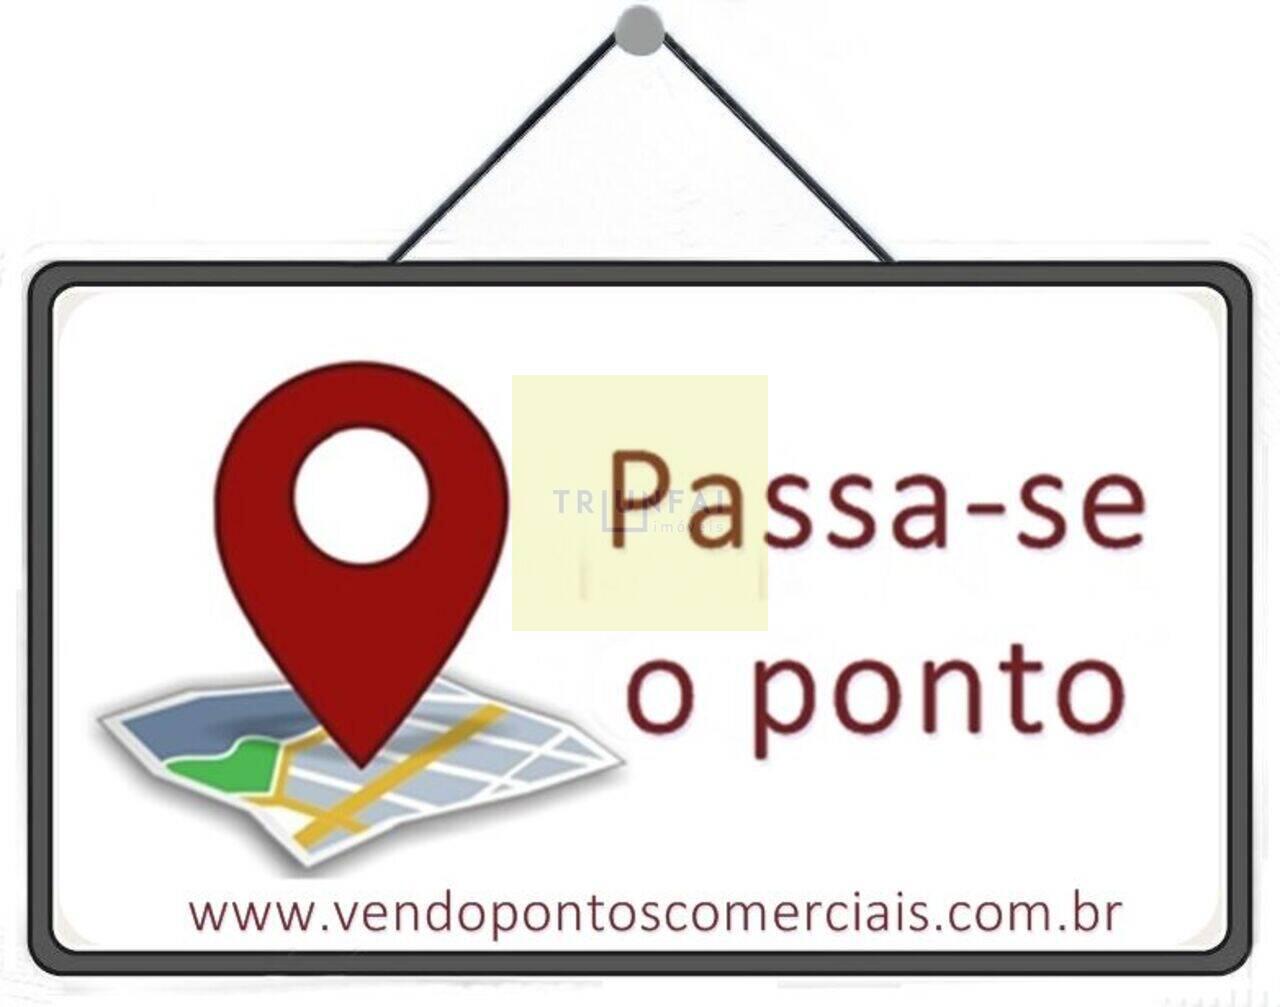 Ponto Centro, Limeira - SP